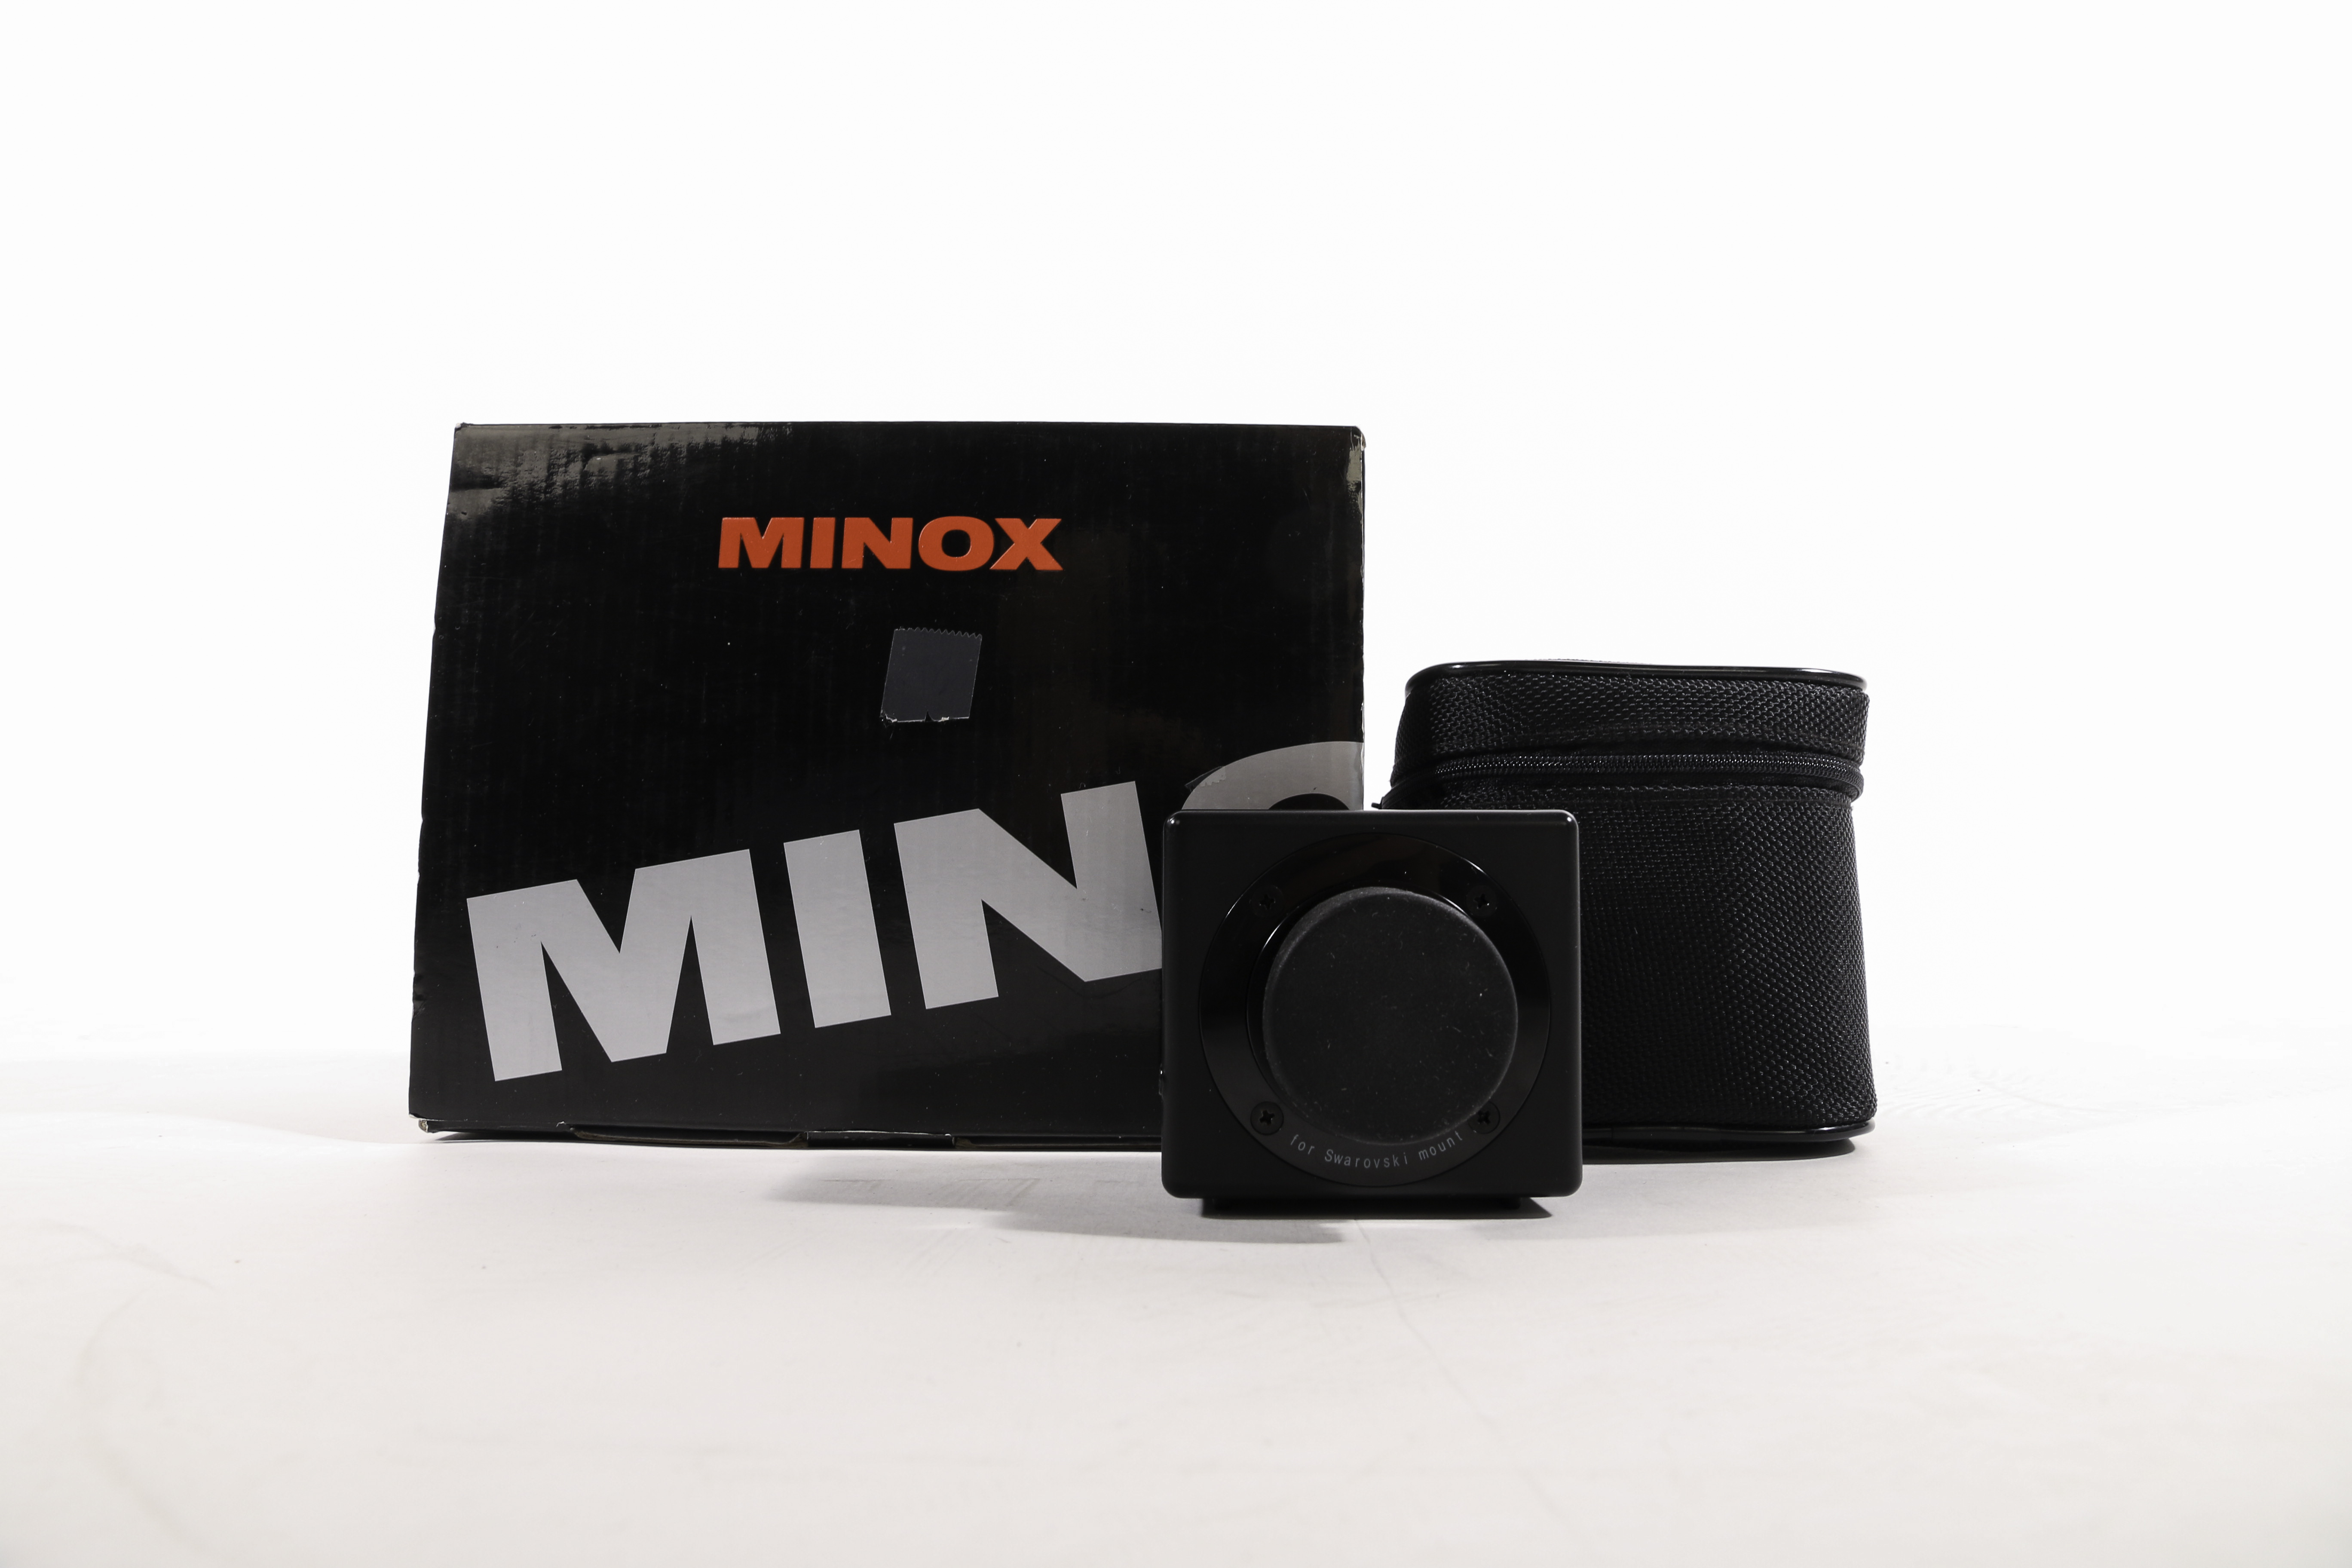 Minox Funkkameramodul 5 für Spective gebraucht Bild 05